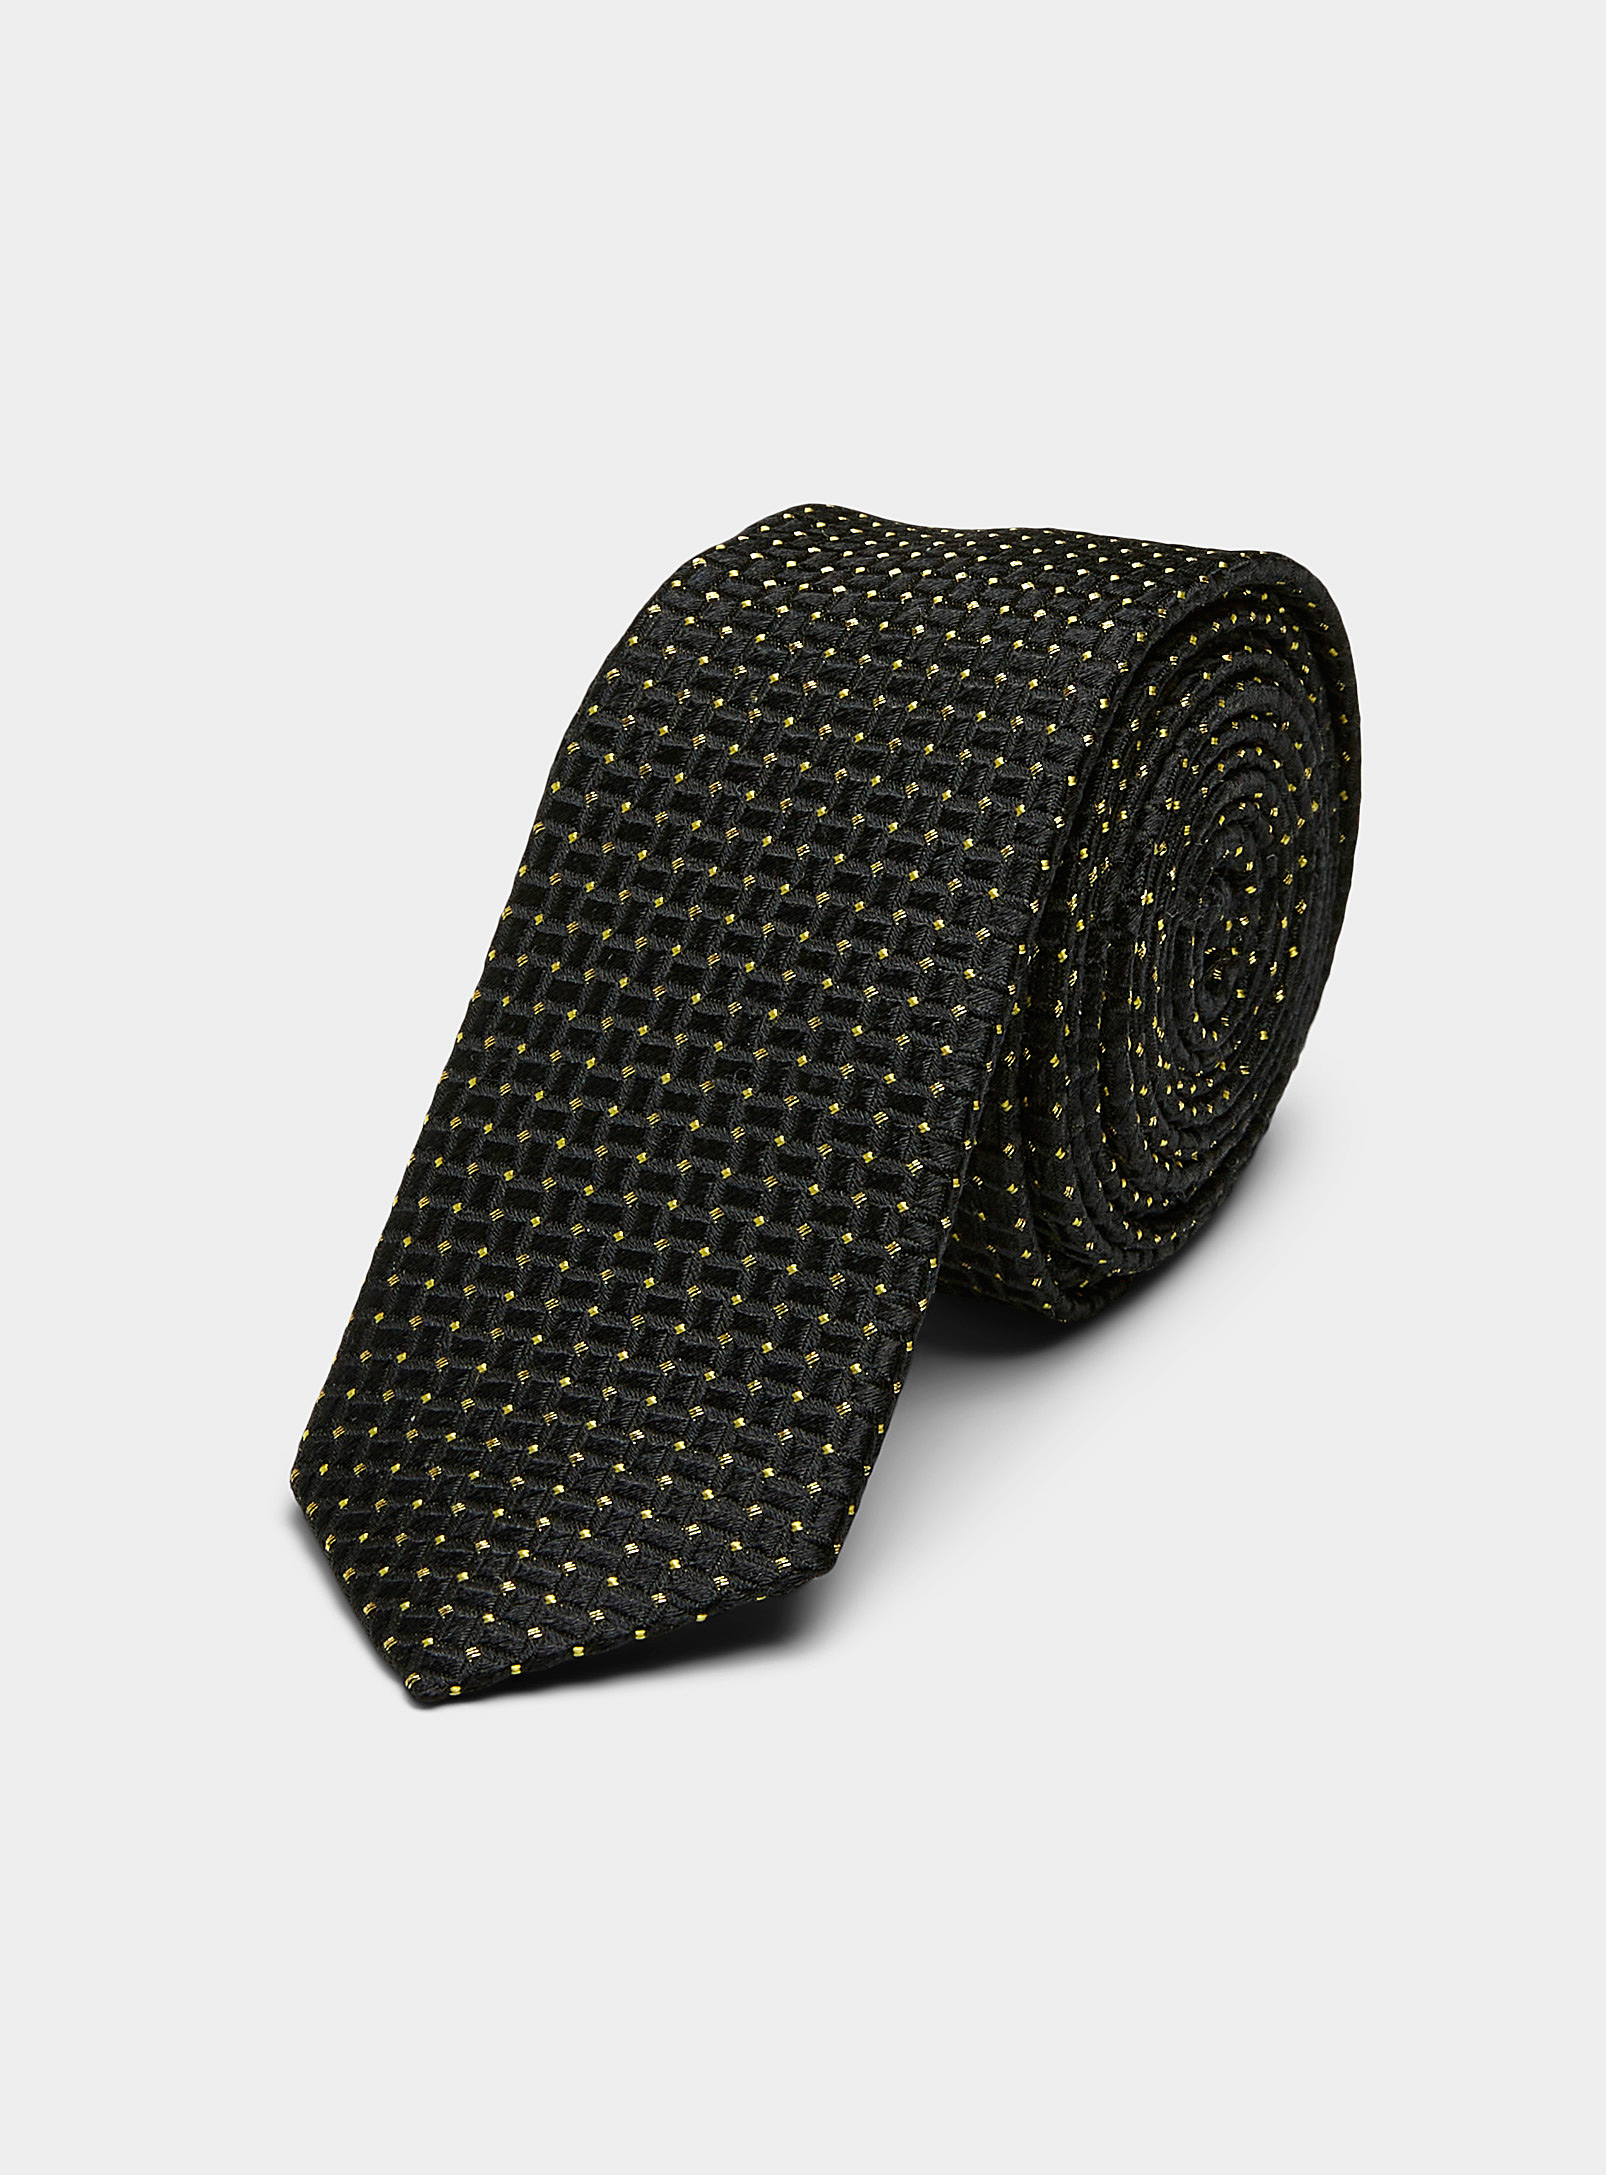 Blick - Men's Jacquard dot skinny tie